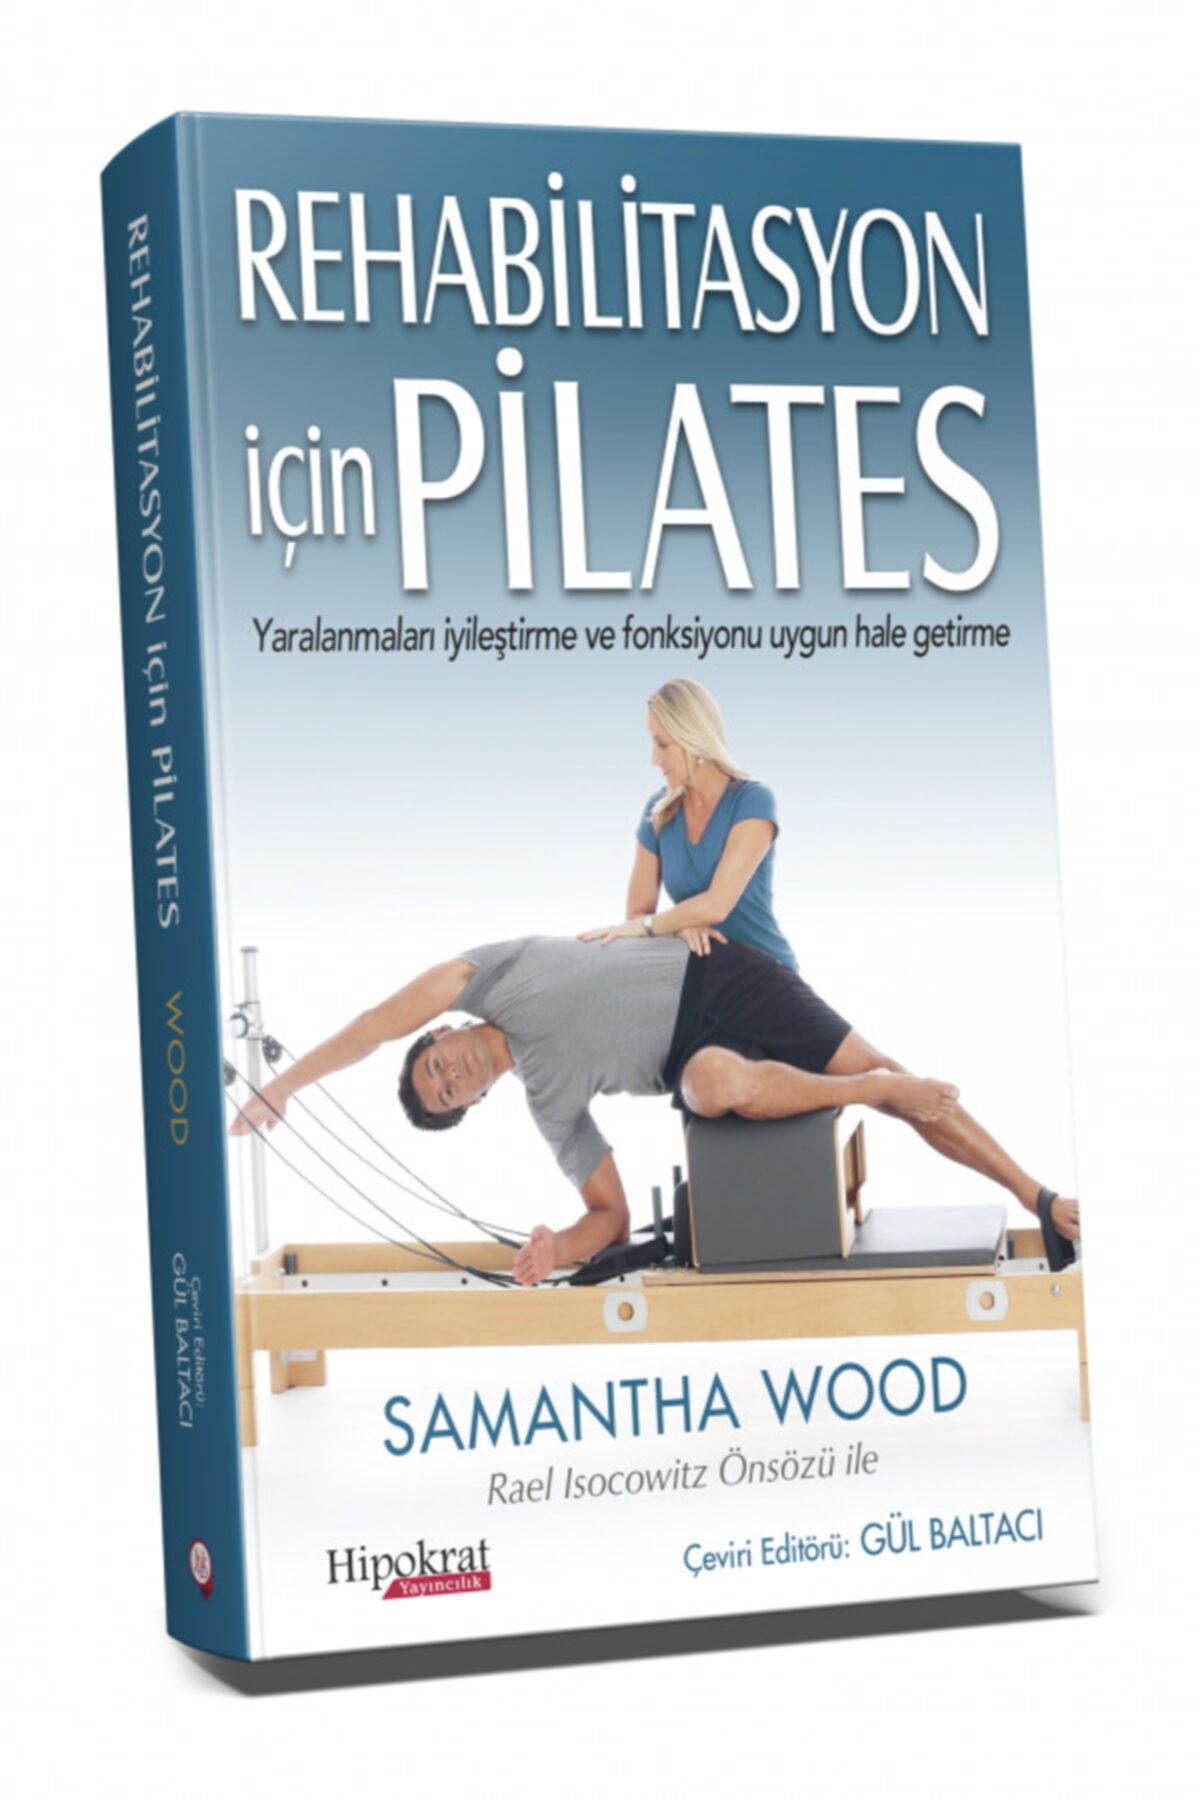 Hipokrat Kitabevi Rehabilitasyon Için Pilates - Yaralanmaları Iyileştirme Ve Fonksiyonu Uygun Hale Getirme